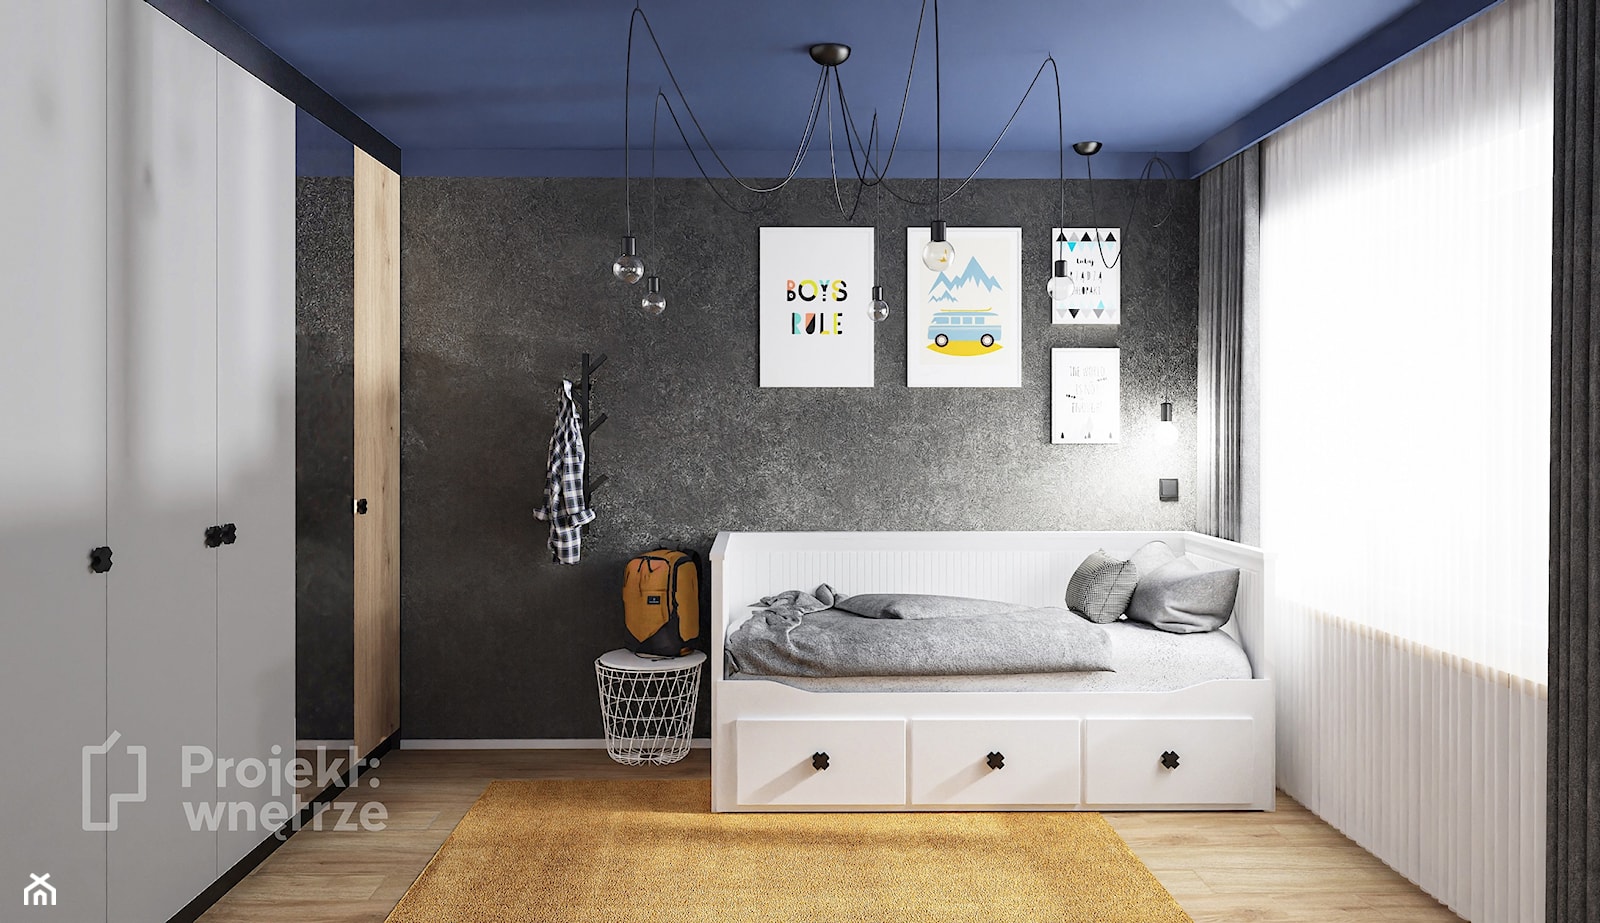 Mały pokój dziecka pokój dla chłopca nastolatka styl nowoczesny z szafą z biurkiem strefa spania, strefa nauki granatowy żółty szary PROJEKT: WNĘTRZE - zdjęcie od PROJEKT: WNĘTRZE - Homebook